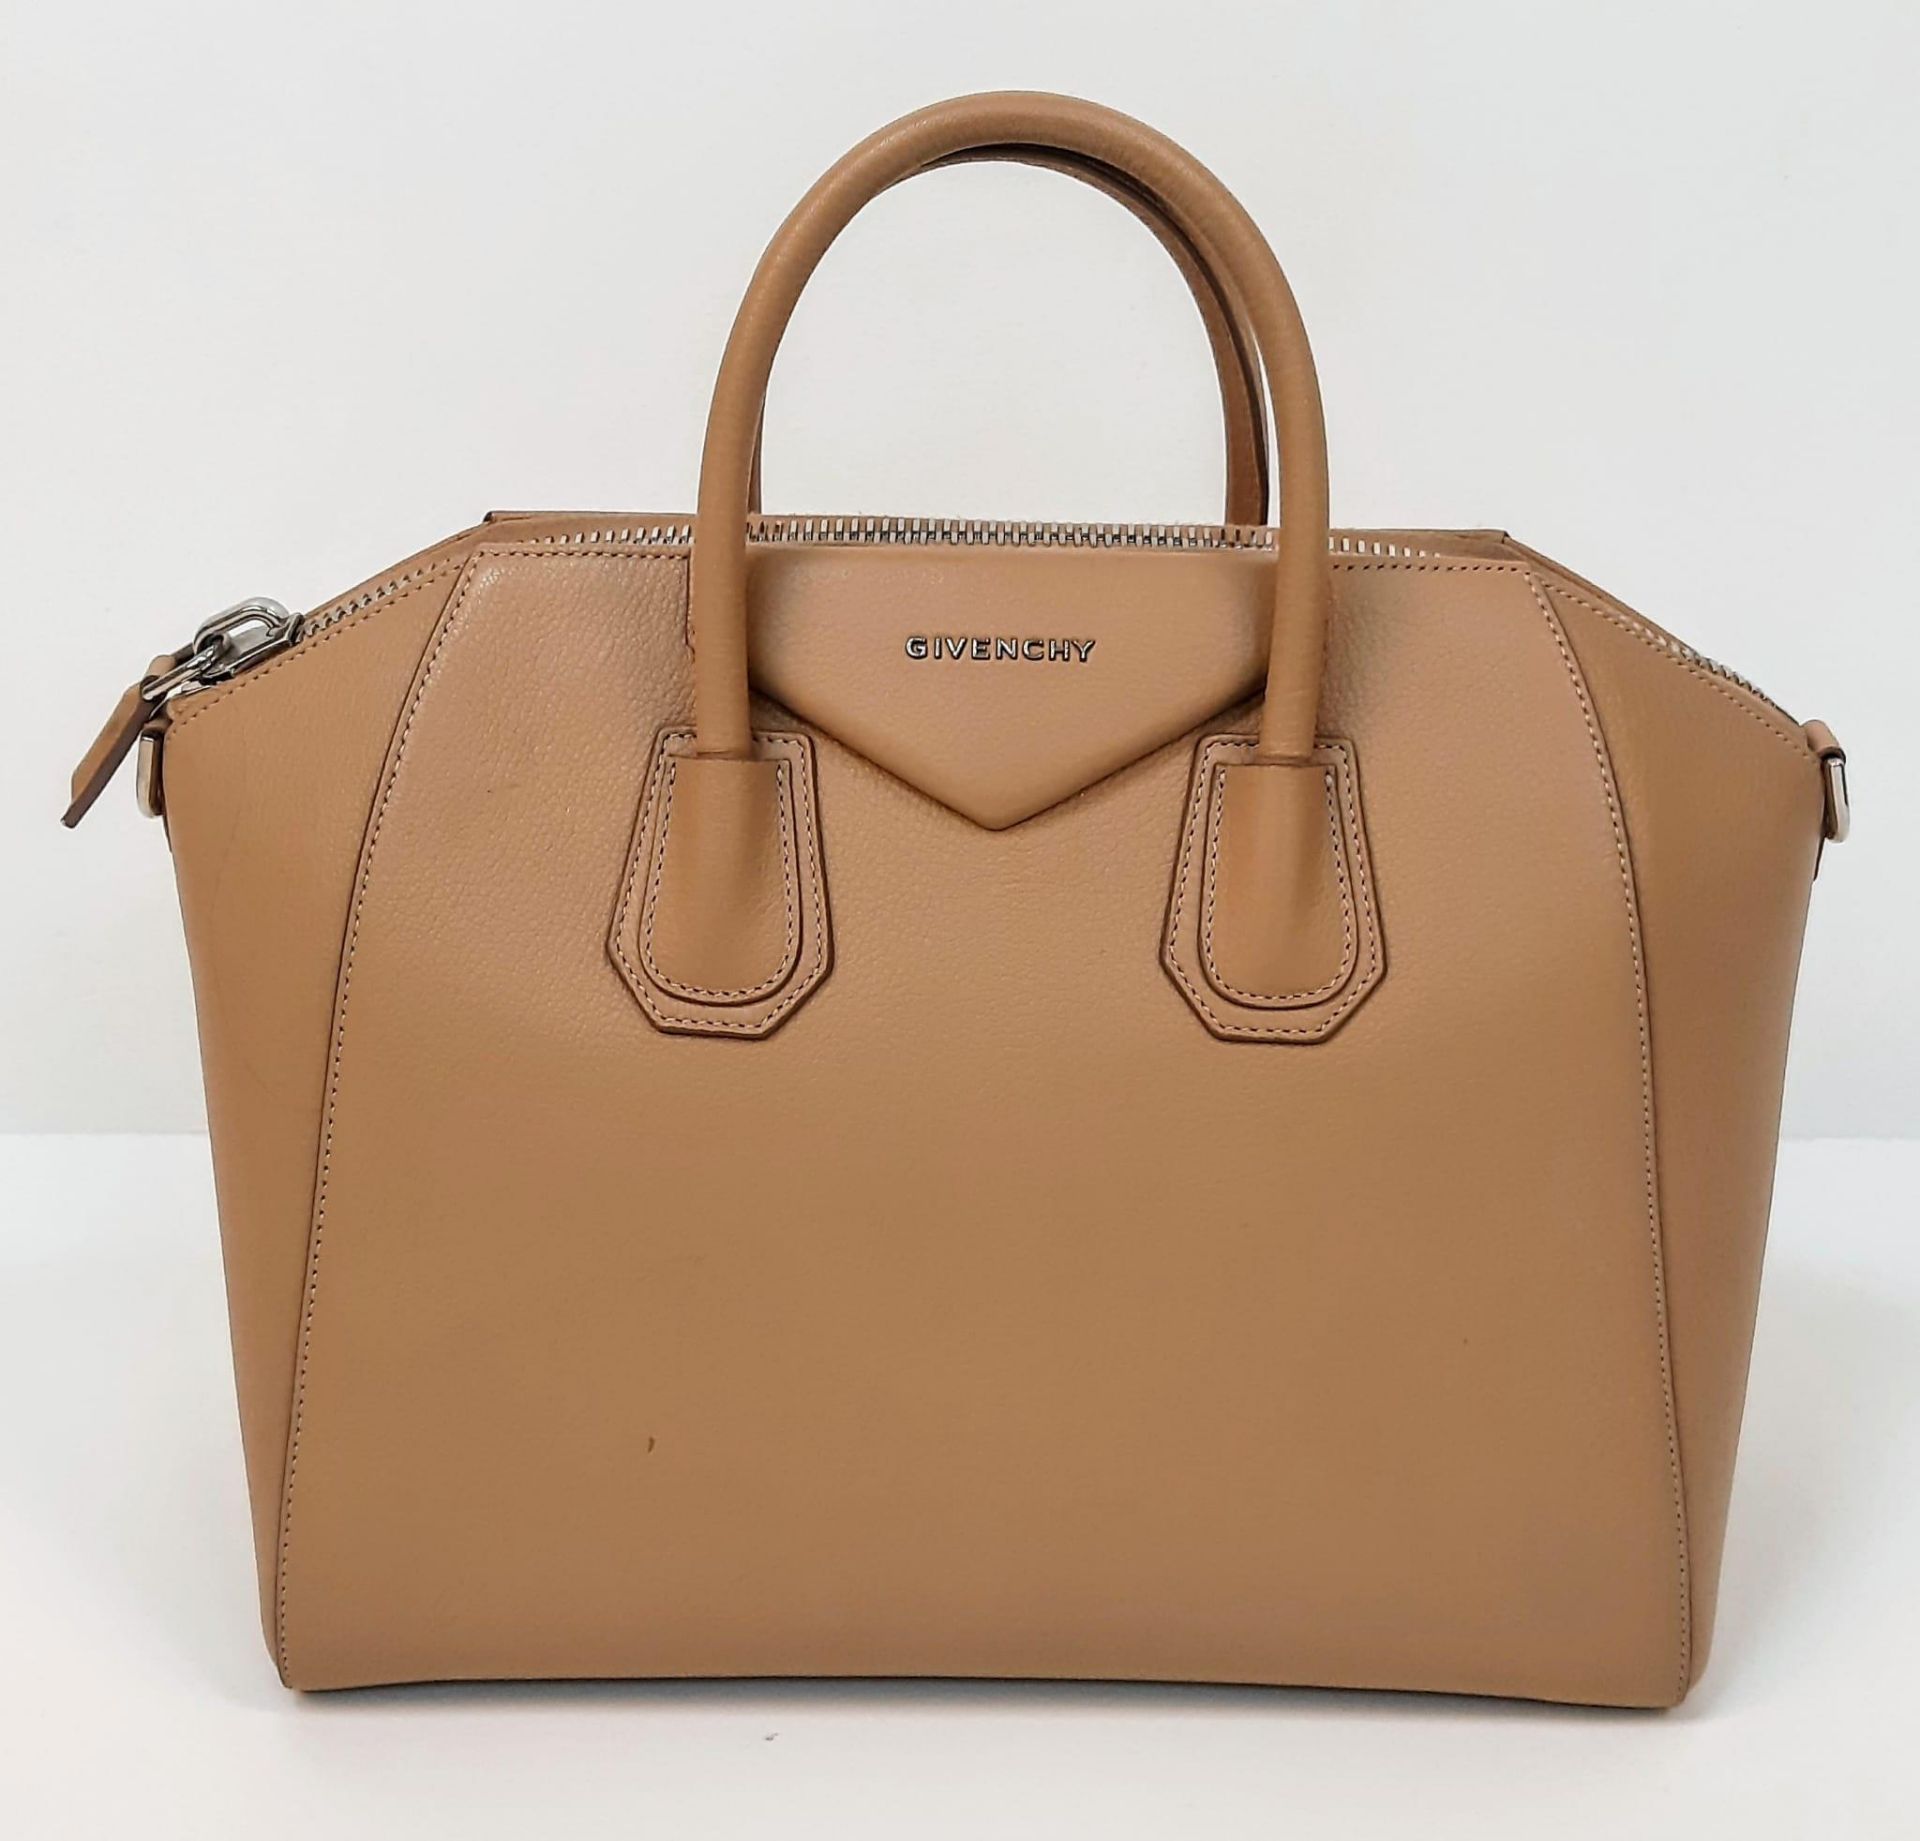 A Givenchy Antigona Leather Shoulder Bag. Brown leather textured exterior. Cream textile interior